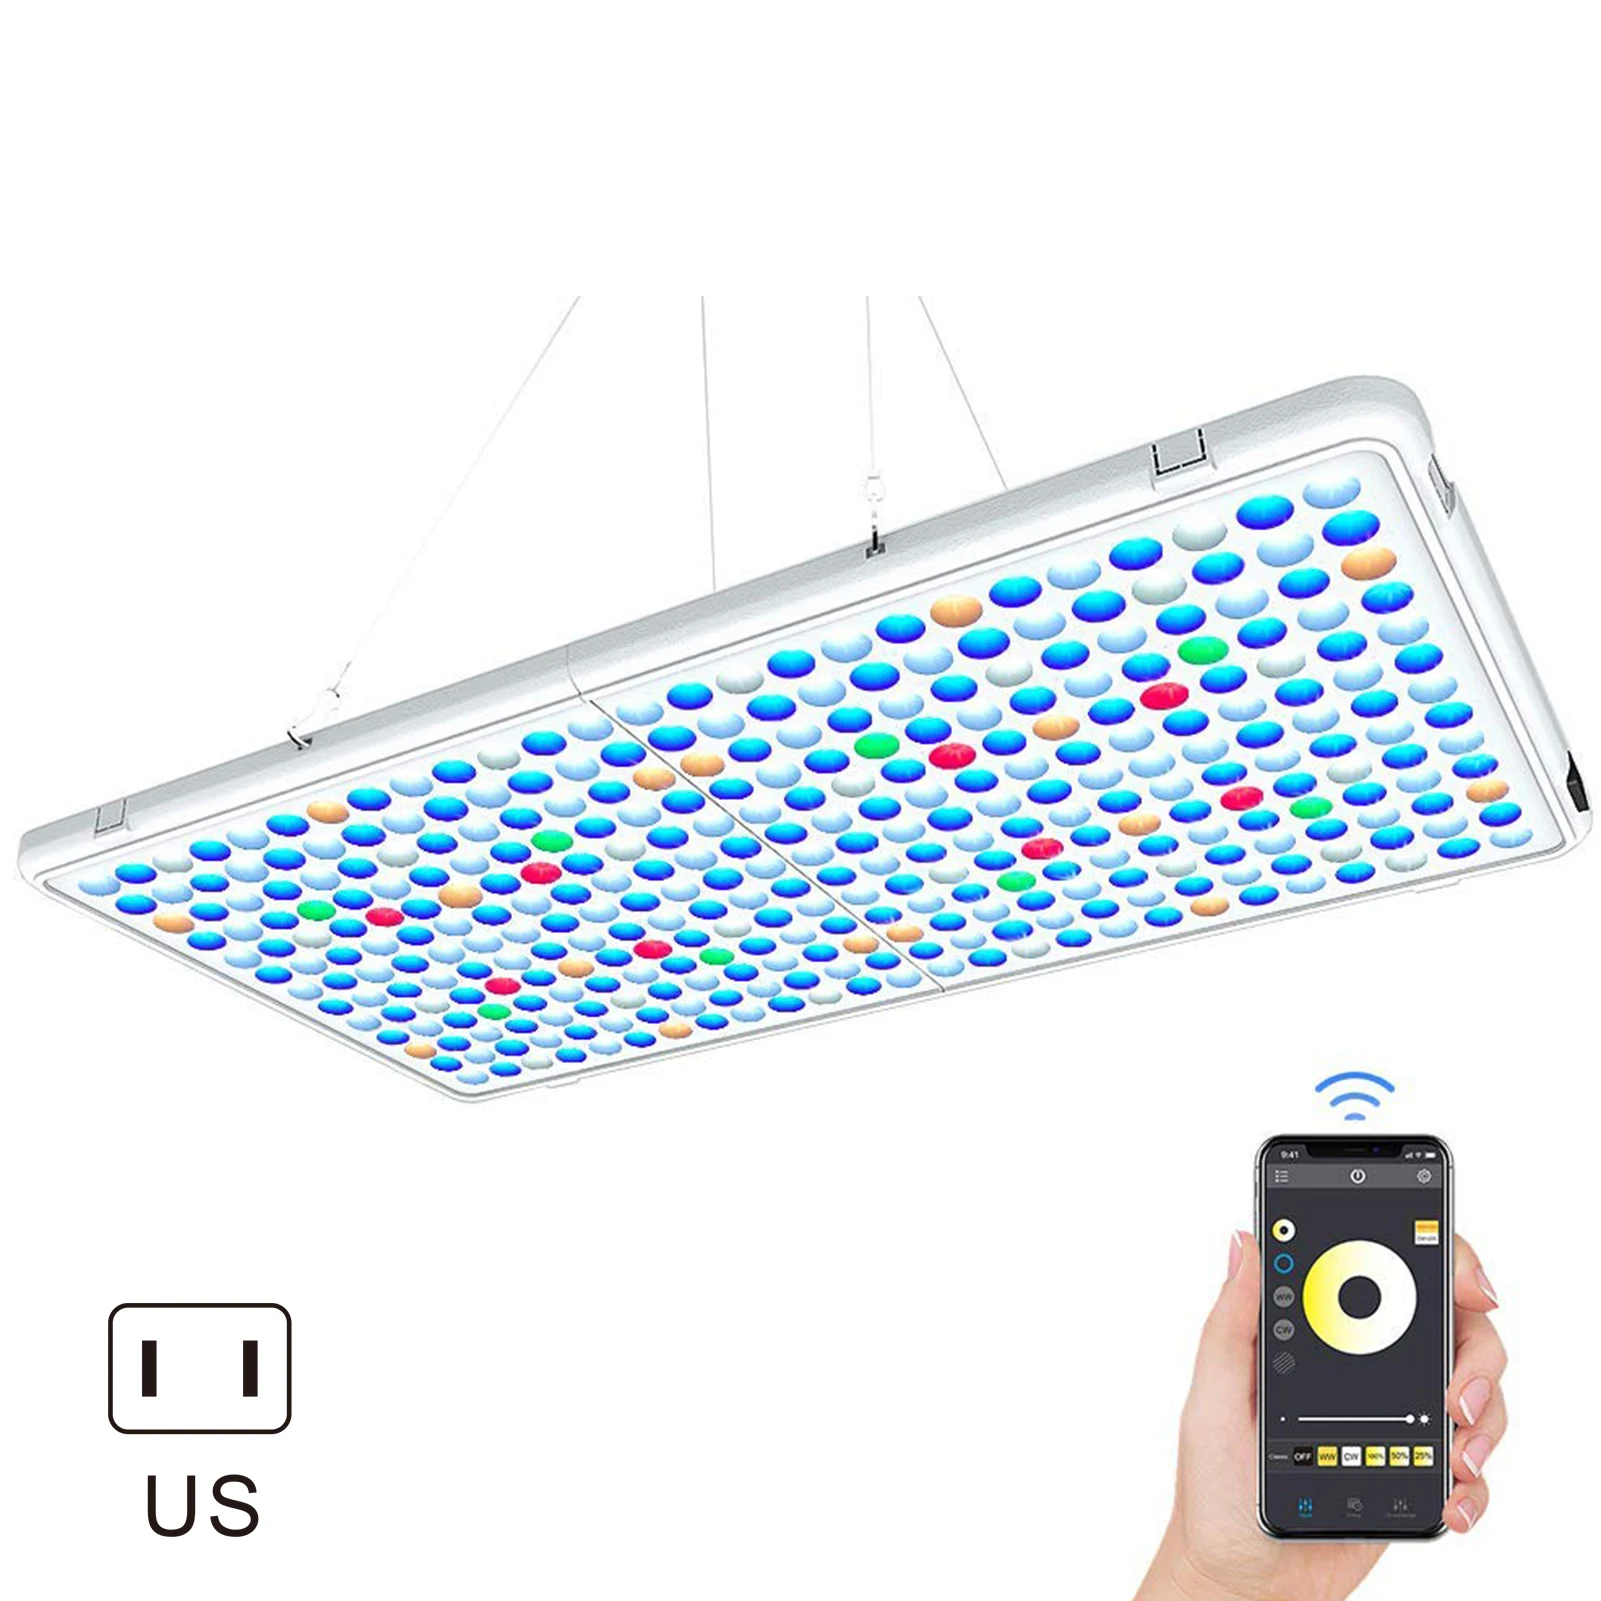 Led aquário luz espectro completo lâmpada de